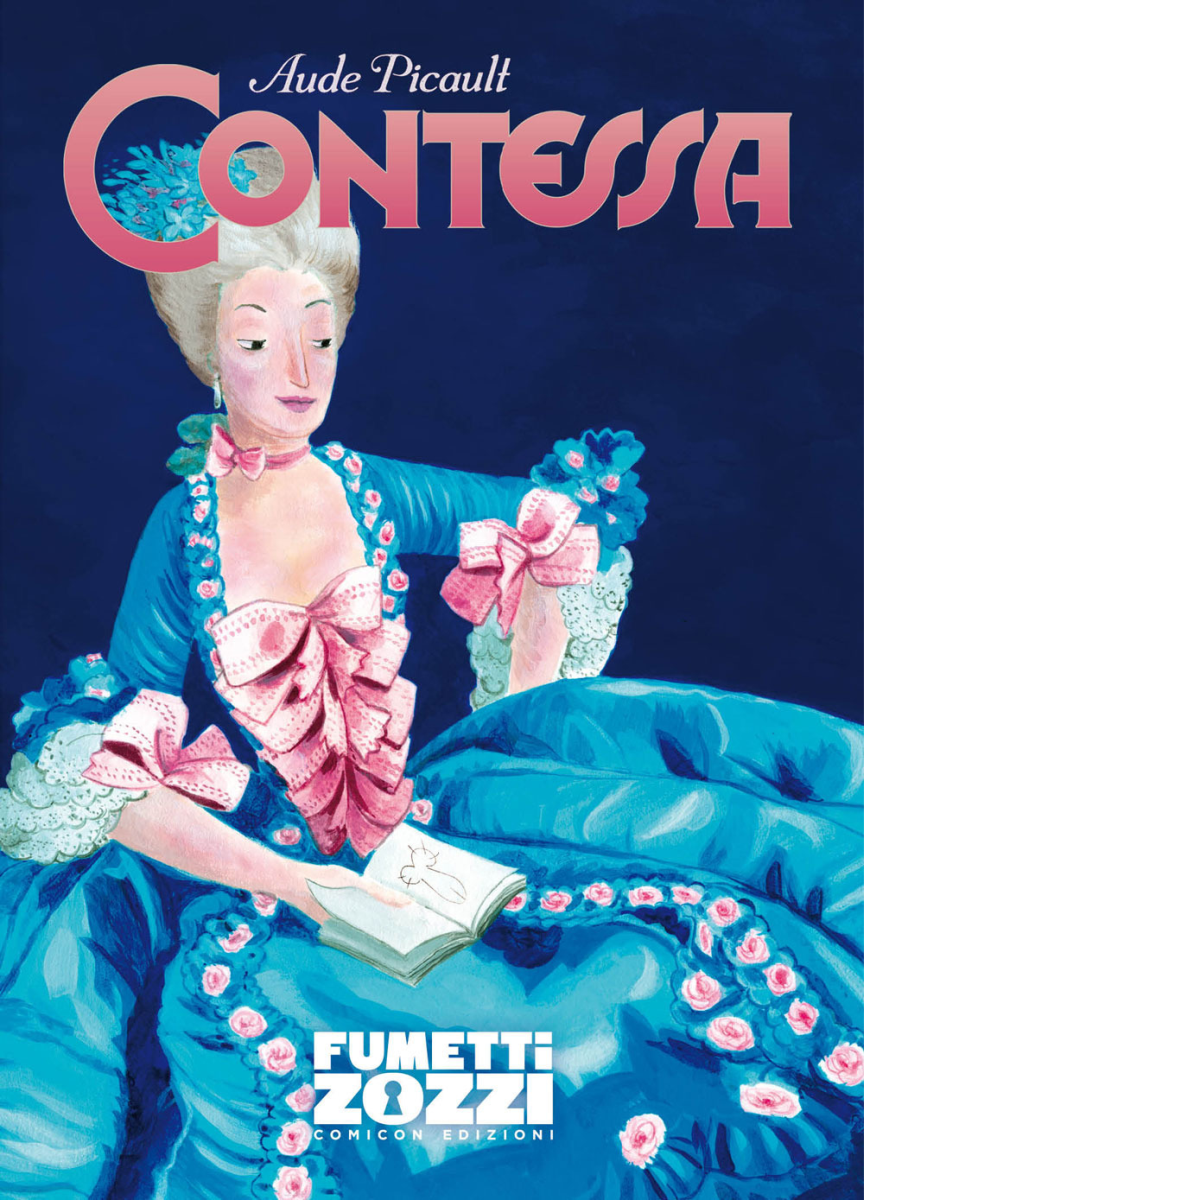 Contessa - Aude Picault - Comicon, 2021